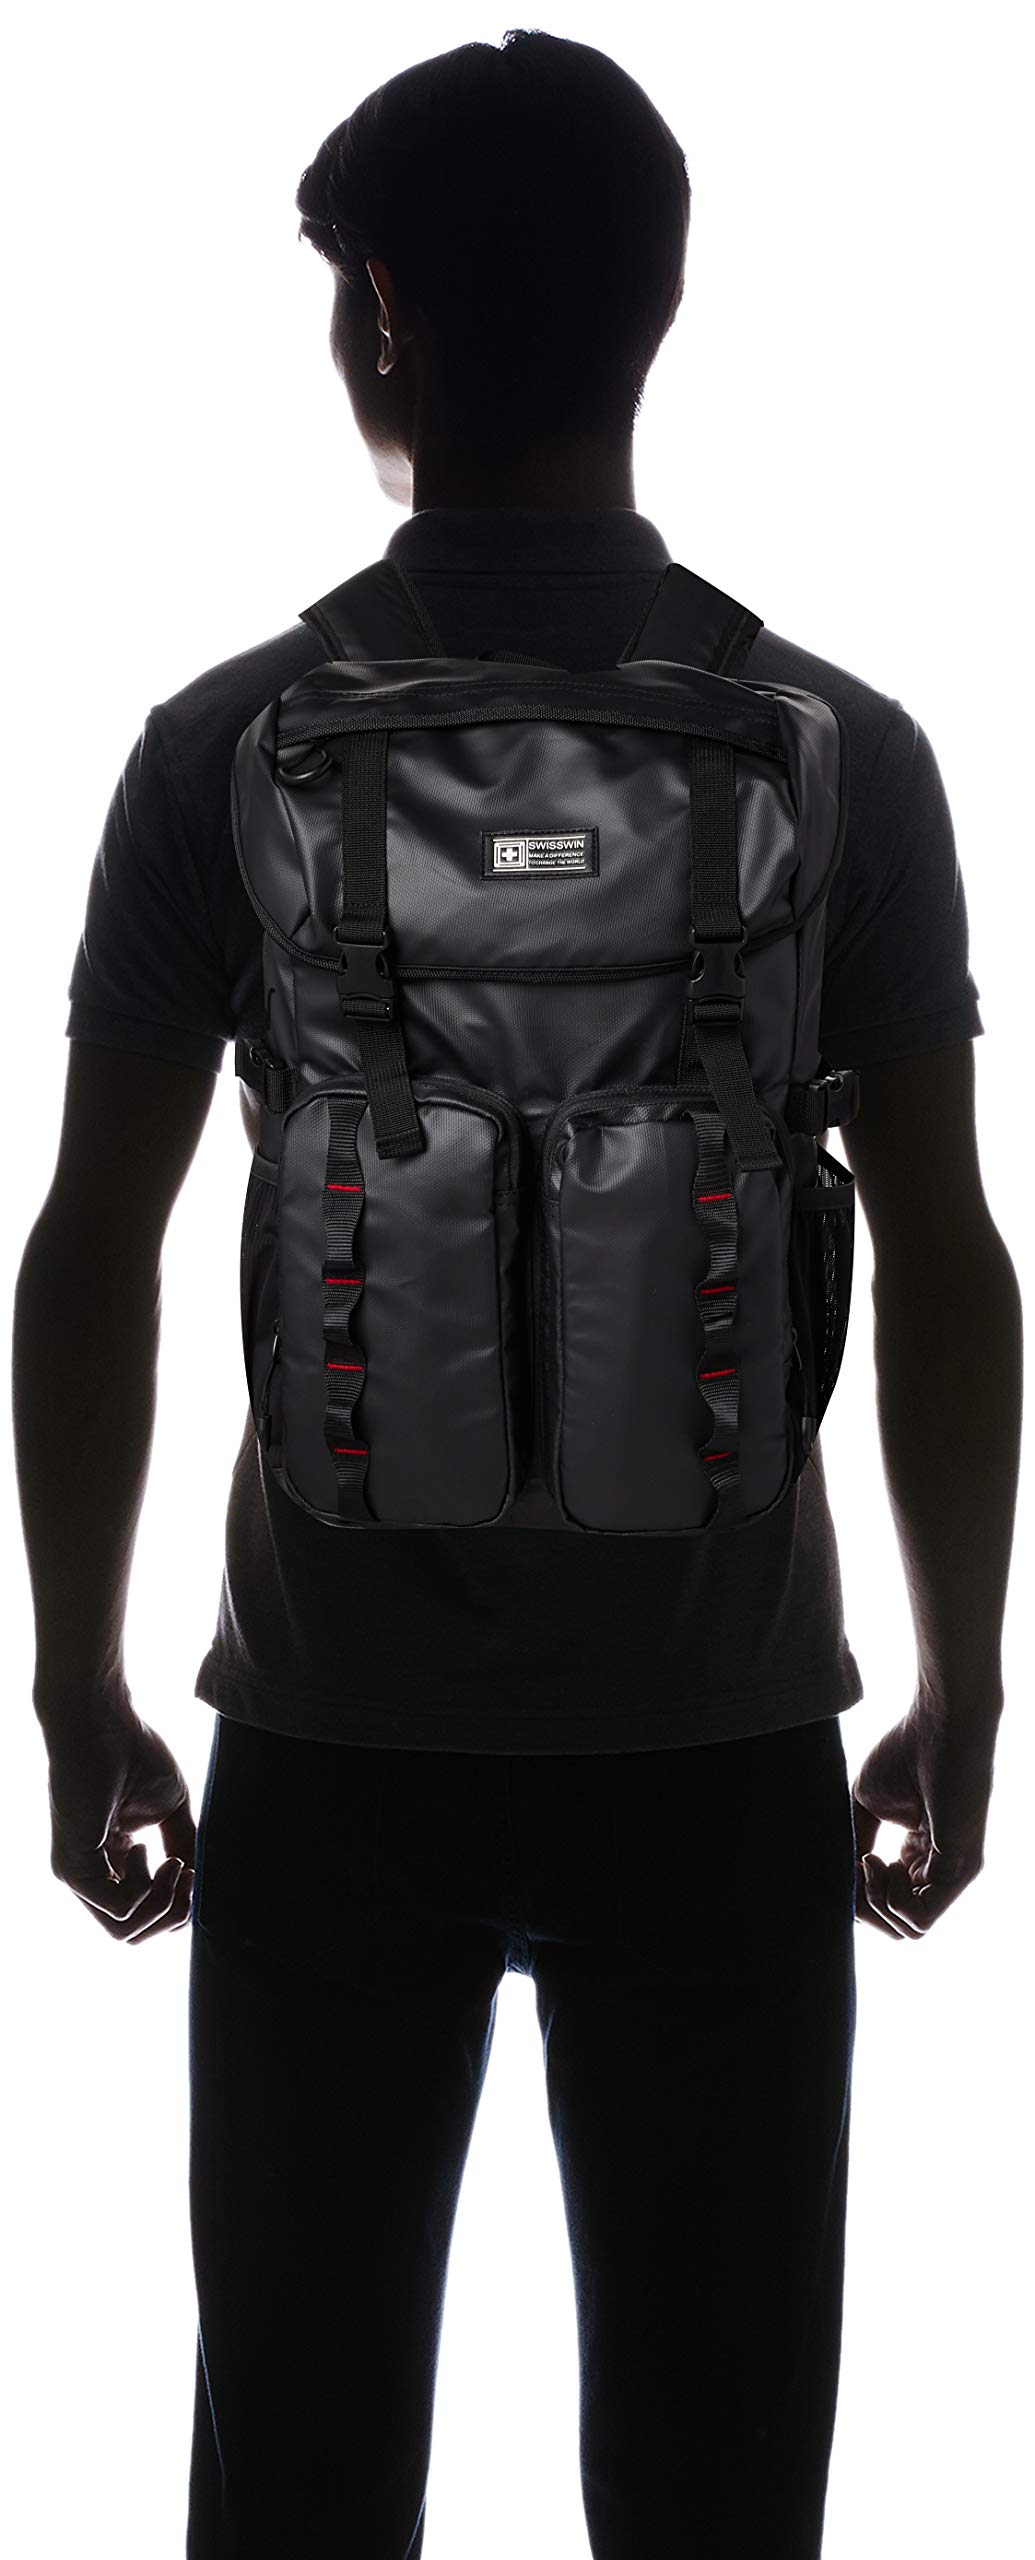 swisswin(スイスウイン) SWF1709 Men's Backpack, Black